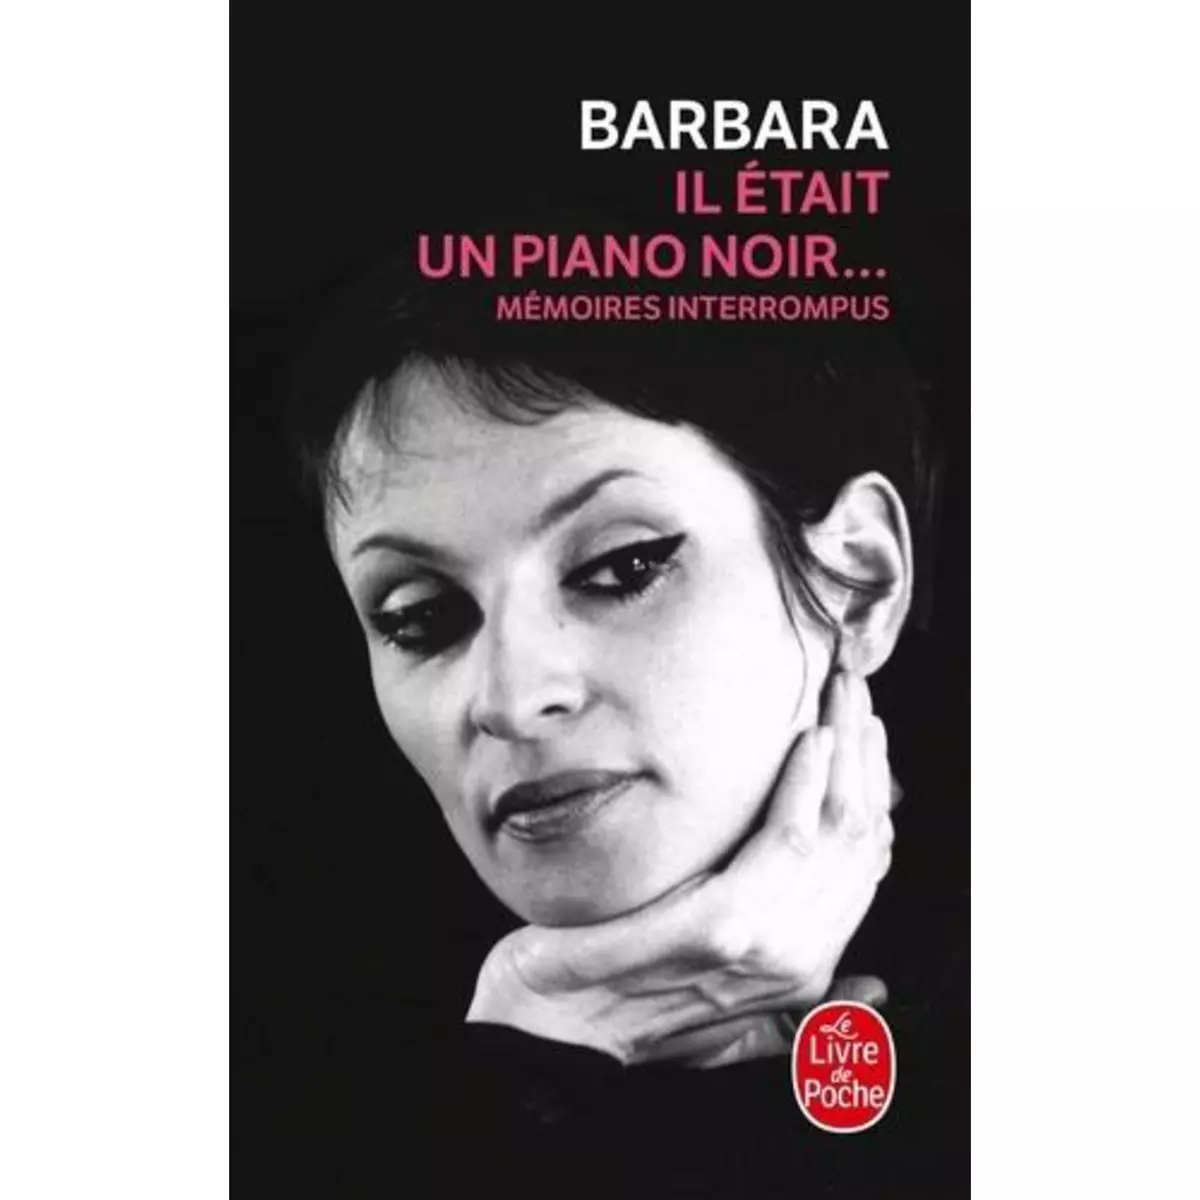  IL ETAIT UN PIANO NOIR... MEMOIRES INTERROMPUS, Barbara